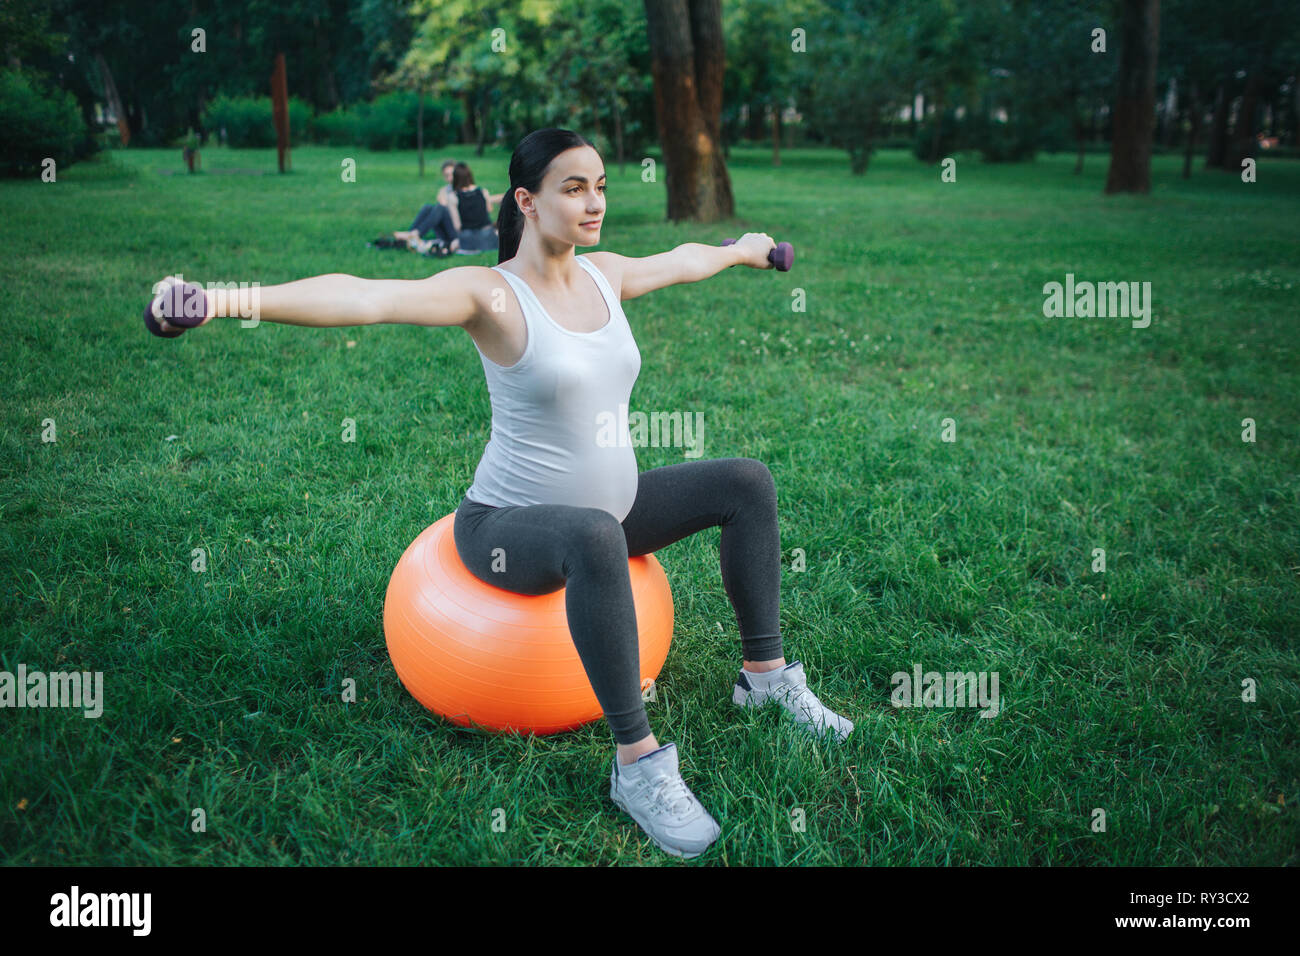 Bien construida de la joven embarazada sentarse en naranja pelota fitness y ejercicio en el parque. Que ella sostenga las pesas. Foto de stock